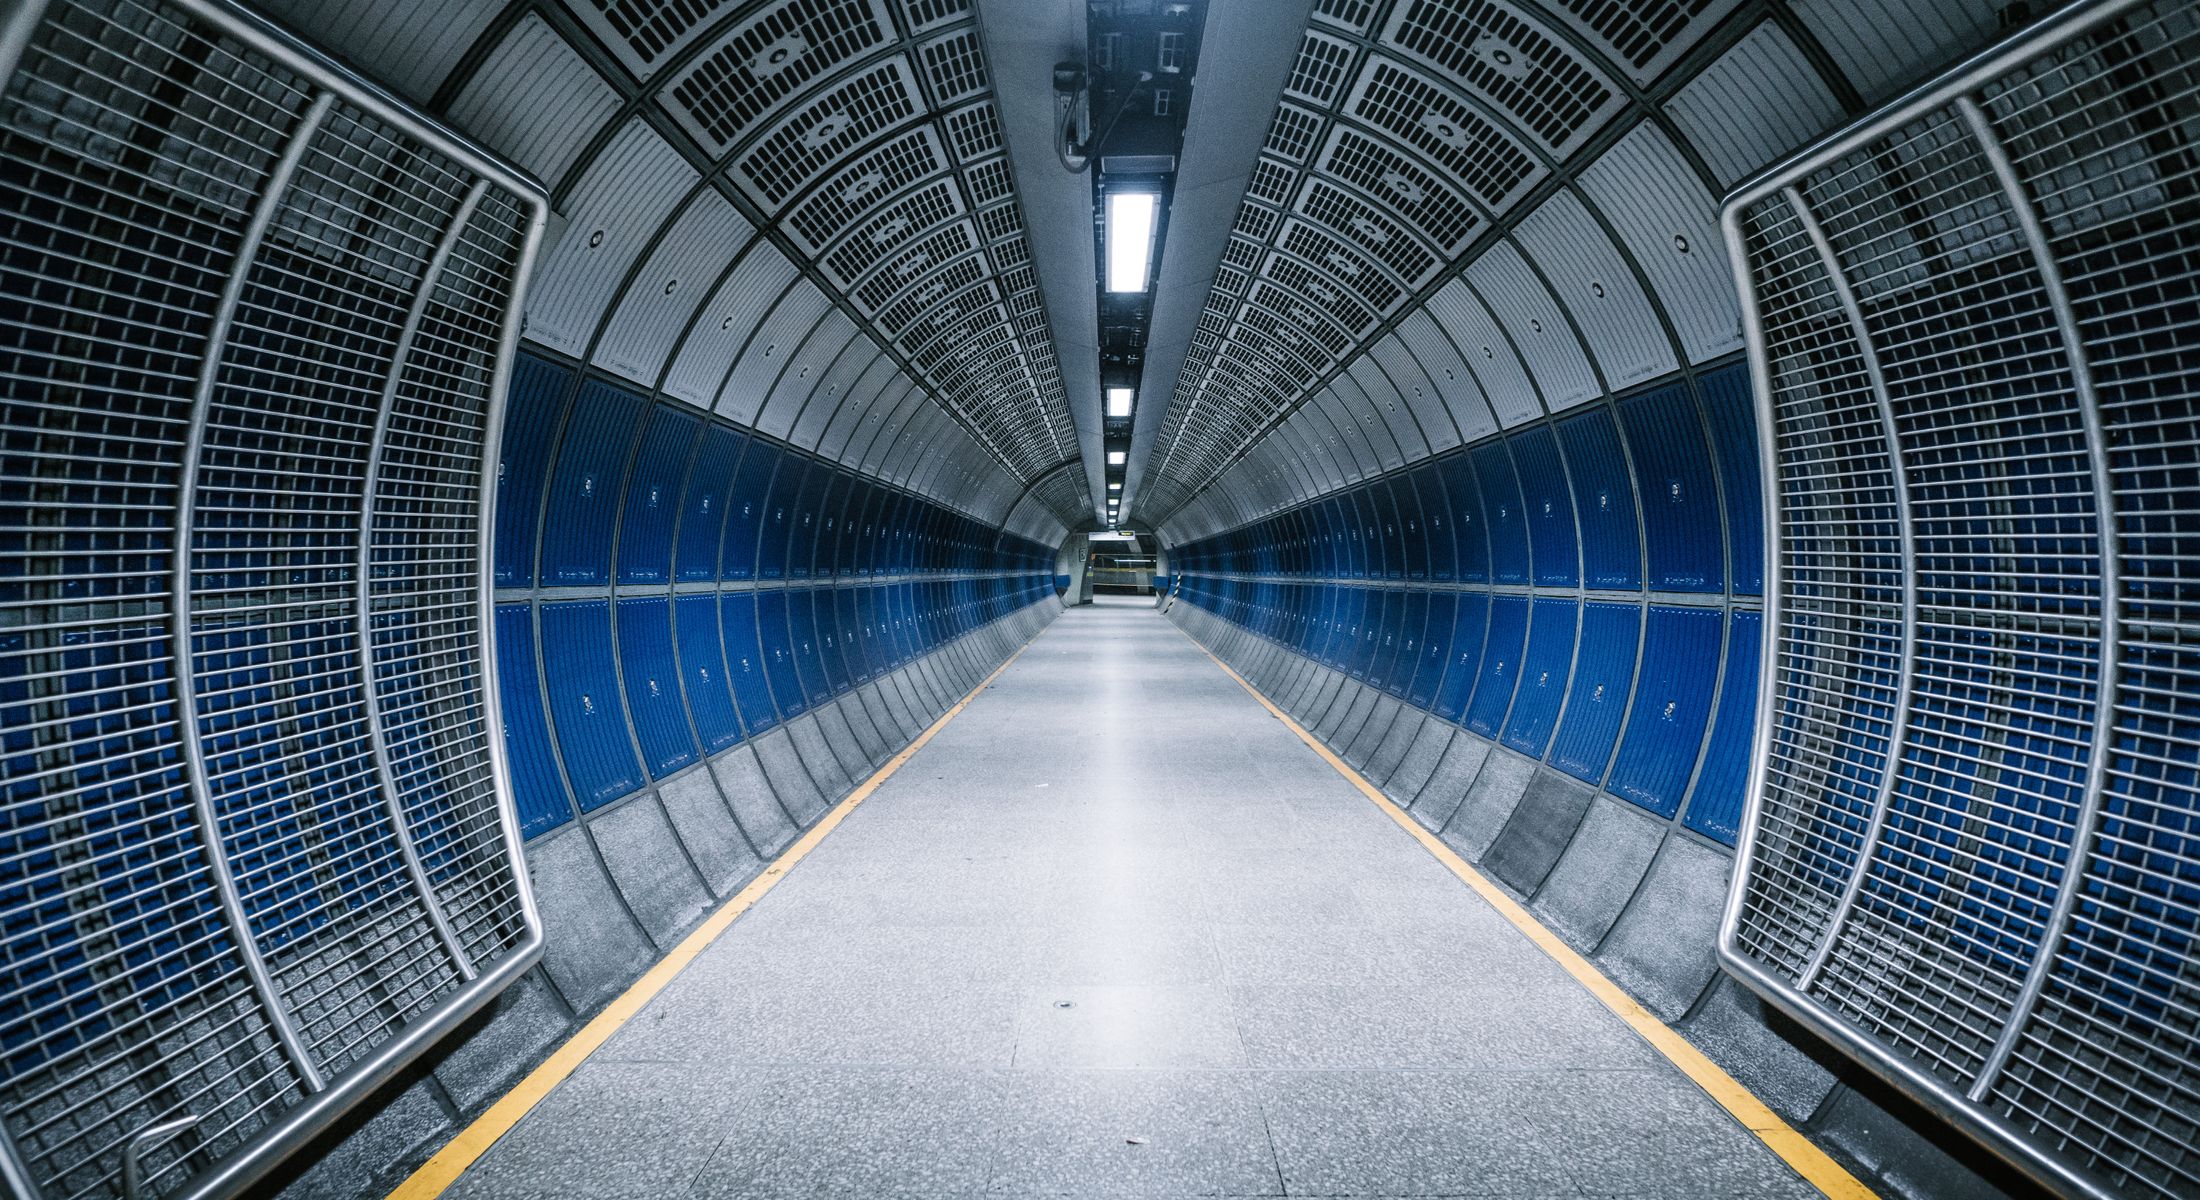 Underground station in London